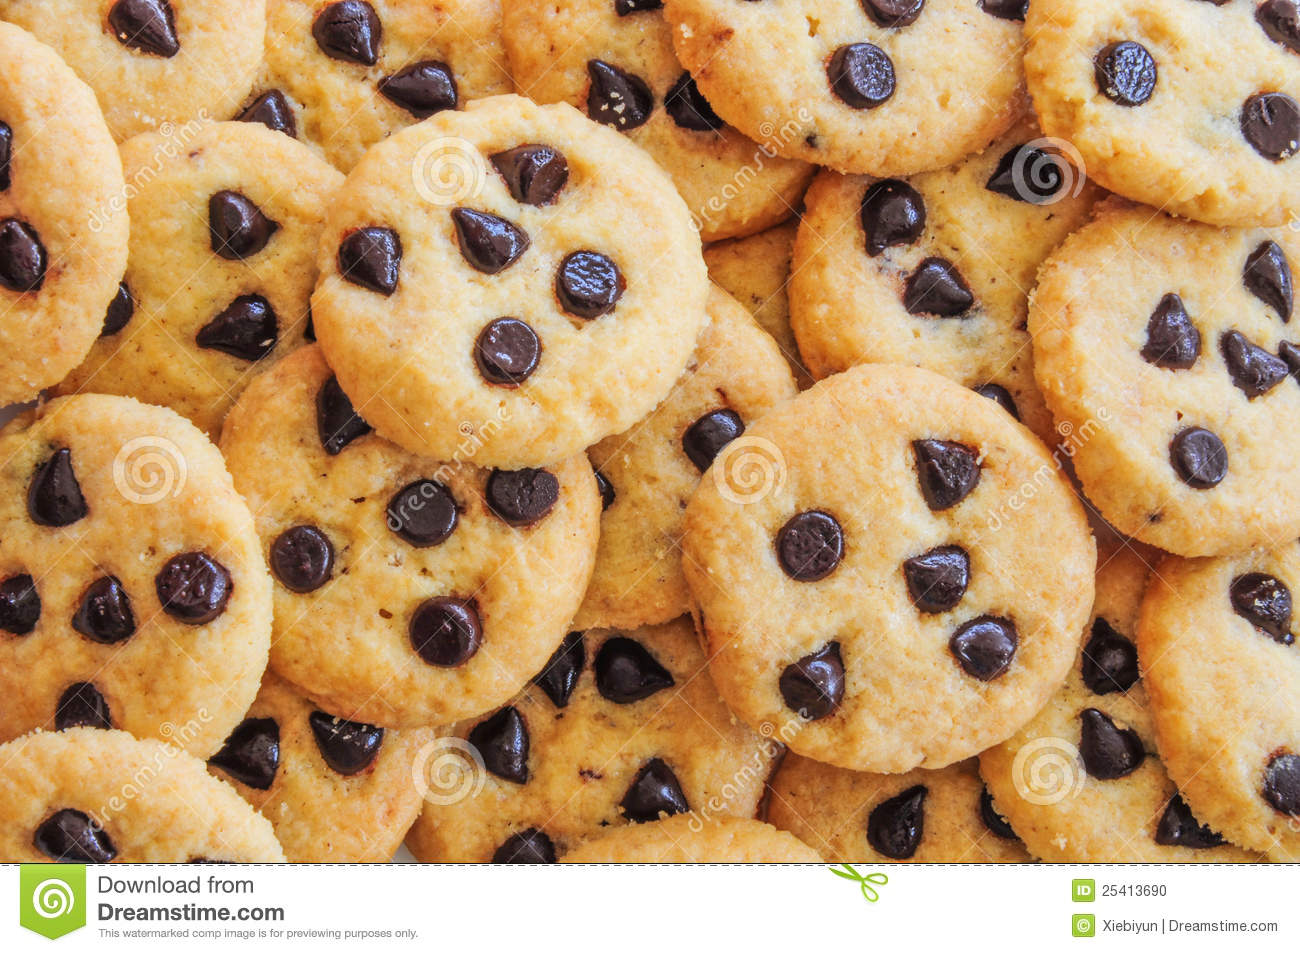 cookie wallpaper,essen,kekse und cracker,gericht,schokoladenkeks,backen